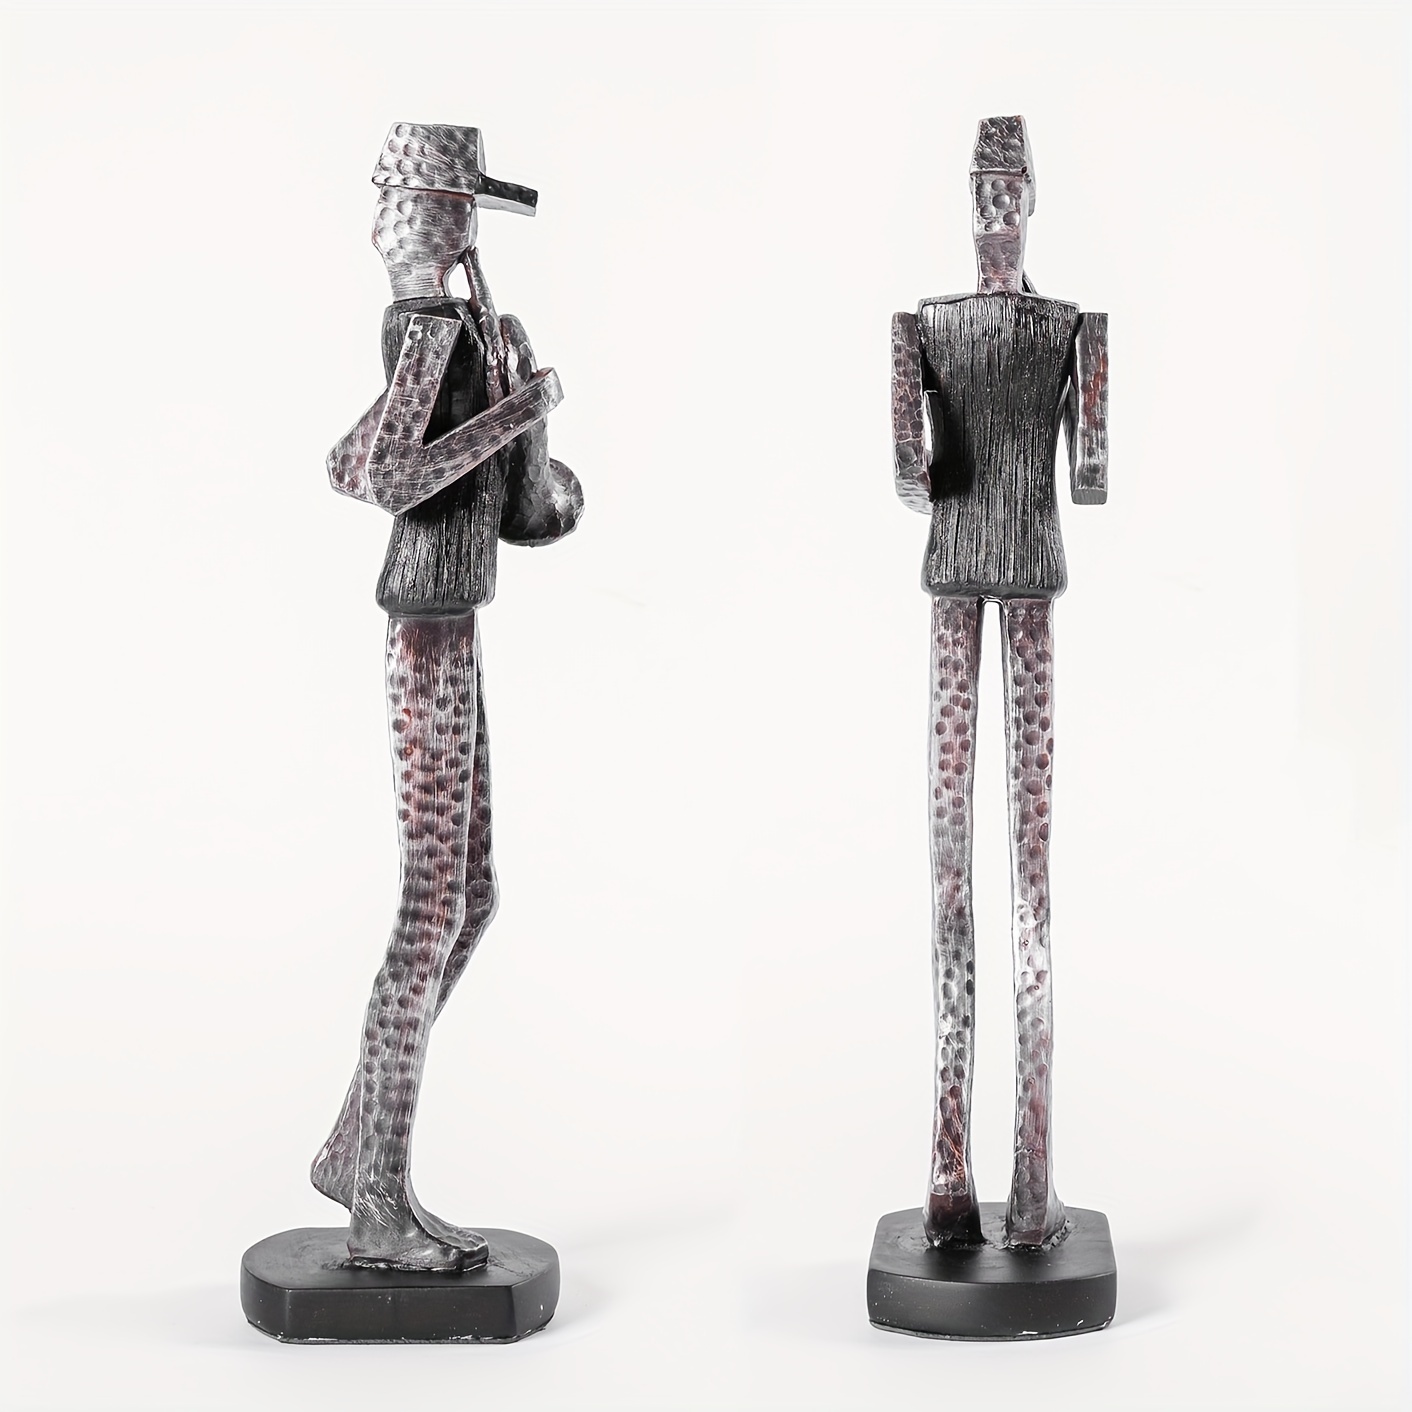 LOVIVER Figurines en résine Cheval Figurine Décoration Cheval Sculpture  Cheval Ornements pour Salon Chambre Maison Bureau Collection Artisanat,  Style